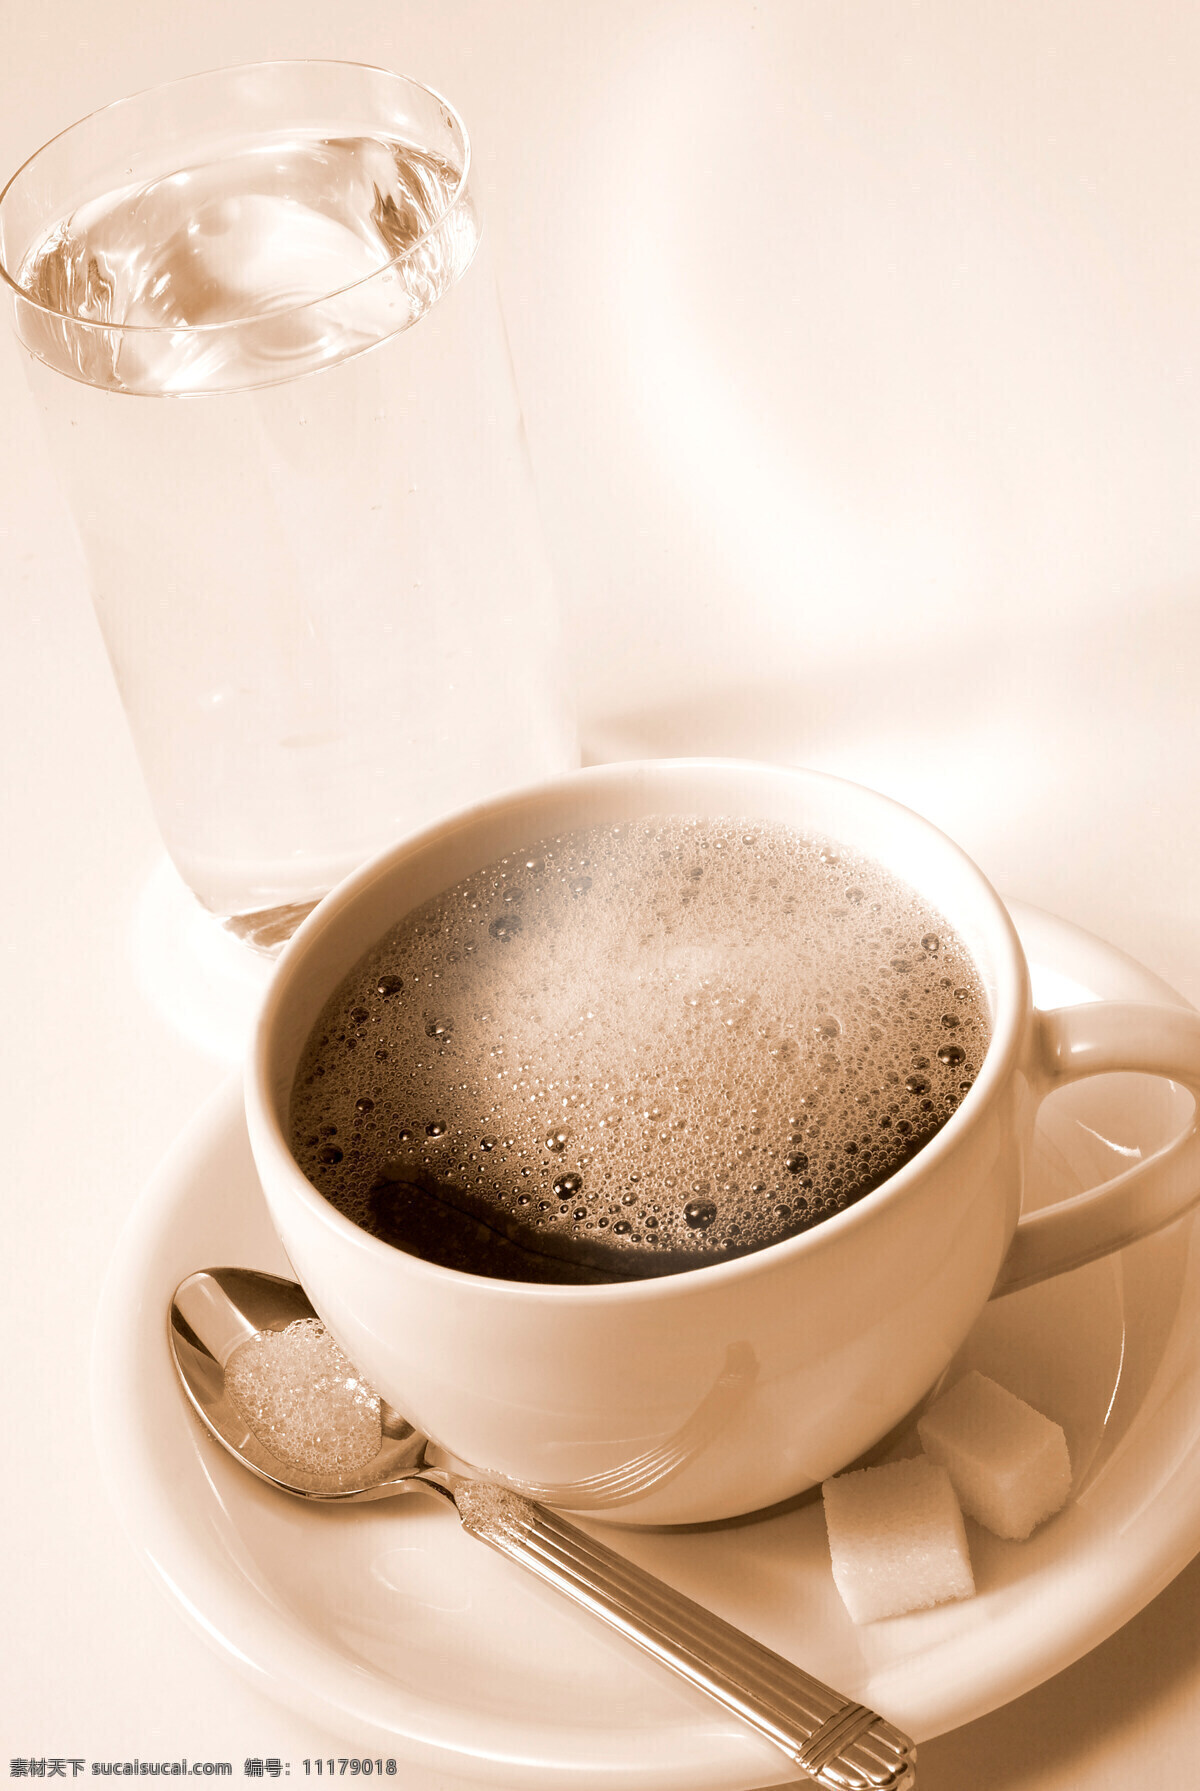 一杯 咖啡 杯水 coffee 一杯咖啡 糖块 杯子 托盘 玻璃杯 水杯 勺子 一杯水 高清图片 咖啡图片 餐饮美食